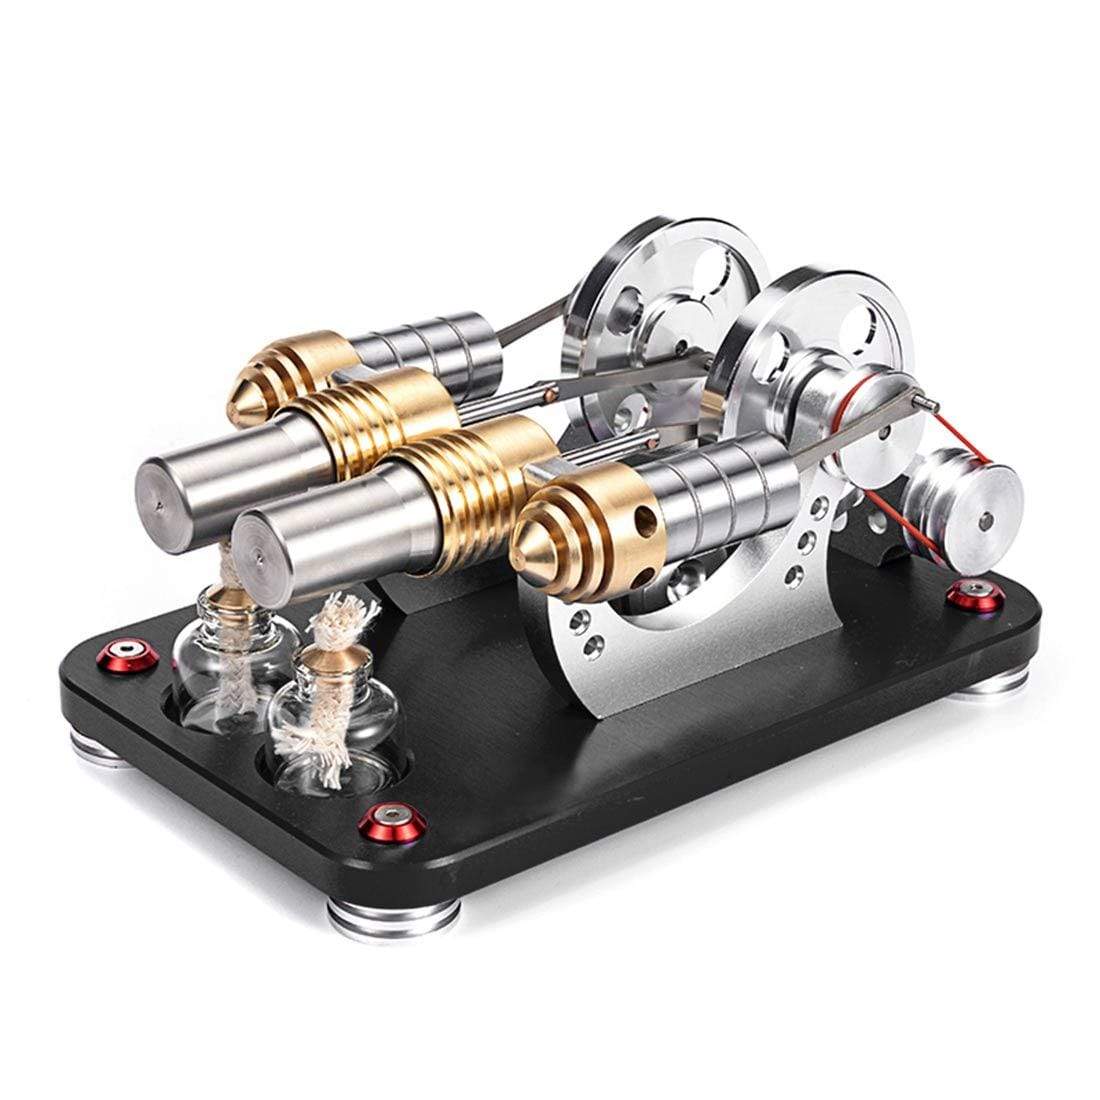 ZUJI Moteur Stirling - 2 Cylindre Stirling Engine Modèle Kit DIY Démarrage  parallèle Stirling Moteur Modèle en Métal